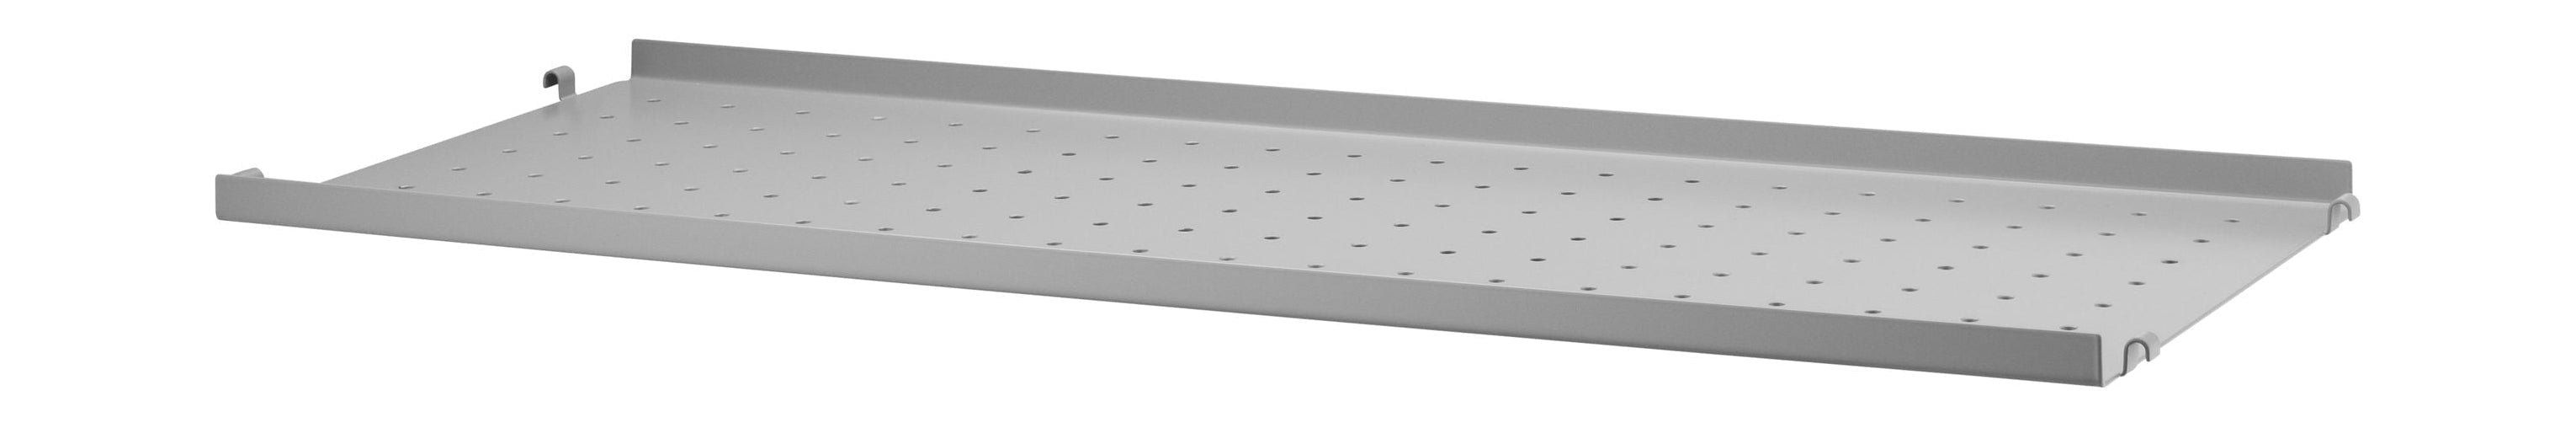 Sistema de muebles de cadena Estante de metal con borde bajo 30x78 cm, gris